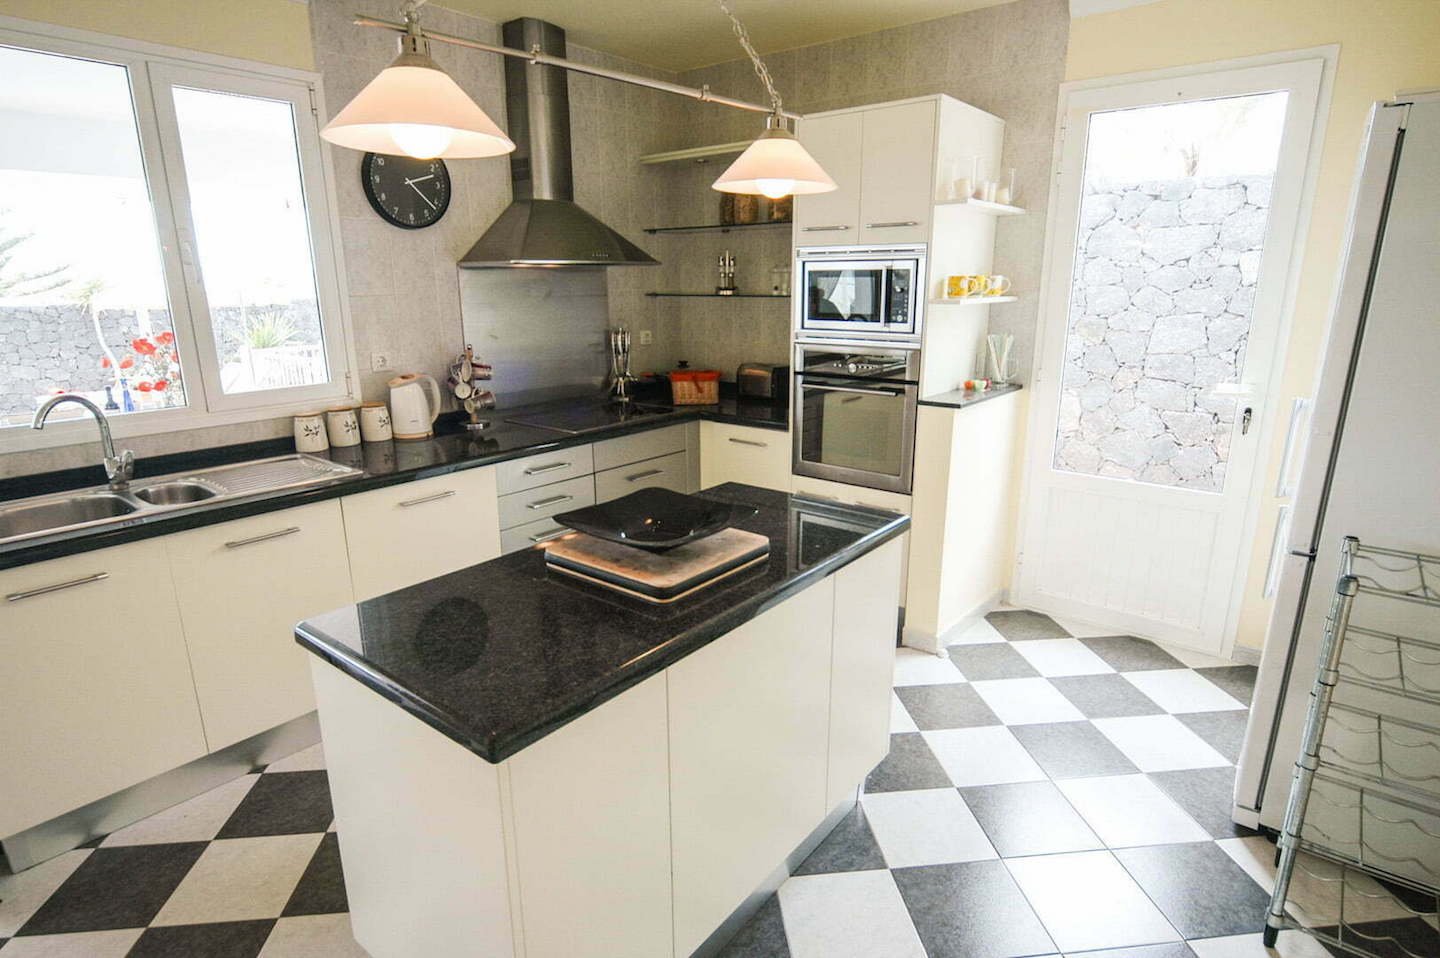 Villa Sama - Puerto Calero - Lanzarote - 4 Bedrooms - 3 Bathrooms - Sleeps 8 Guests - Fully Fitted Kitchen